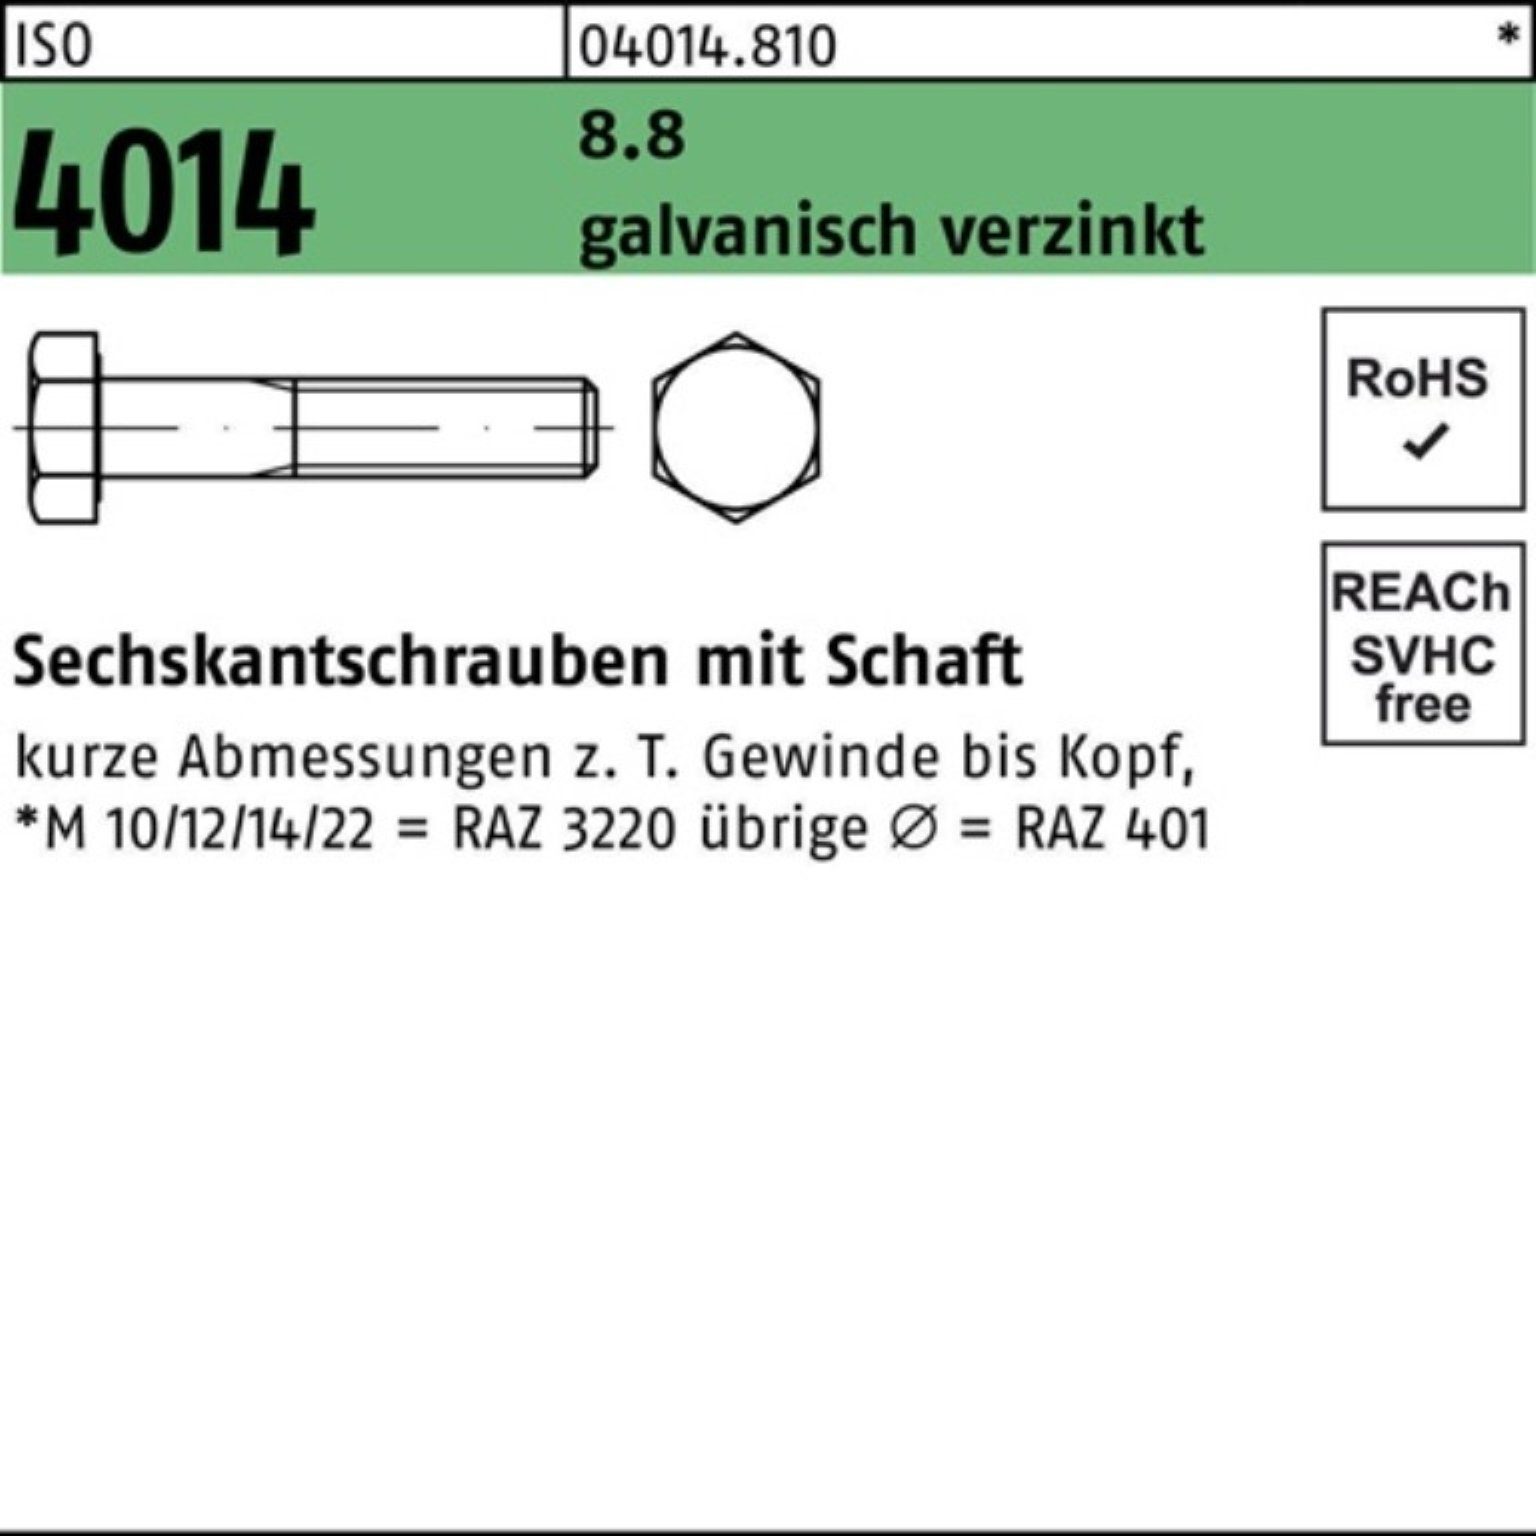 Bufab Sechskantschraube 200er Sechskantschraube galv.verz. 8.8 4014 M4x Pack Schaft 200 55 ISO